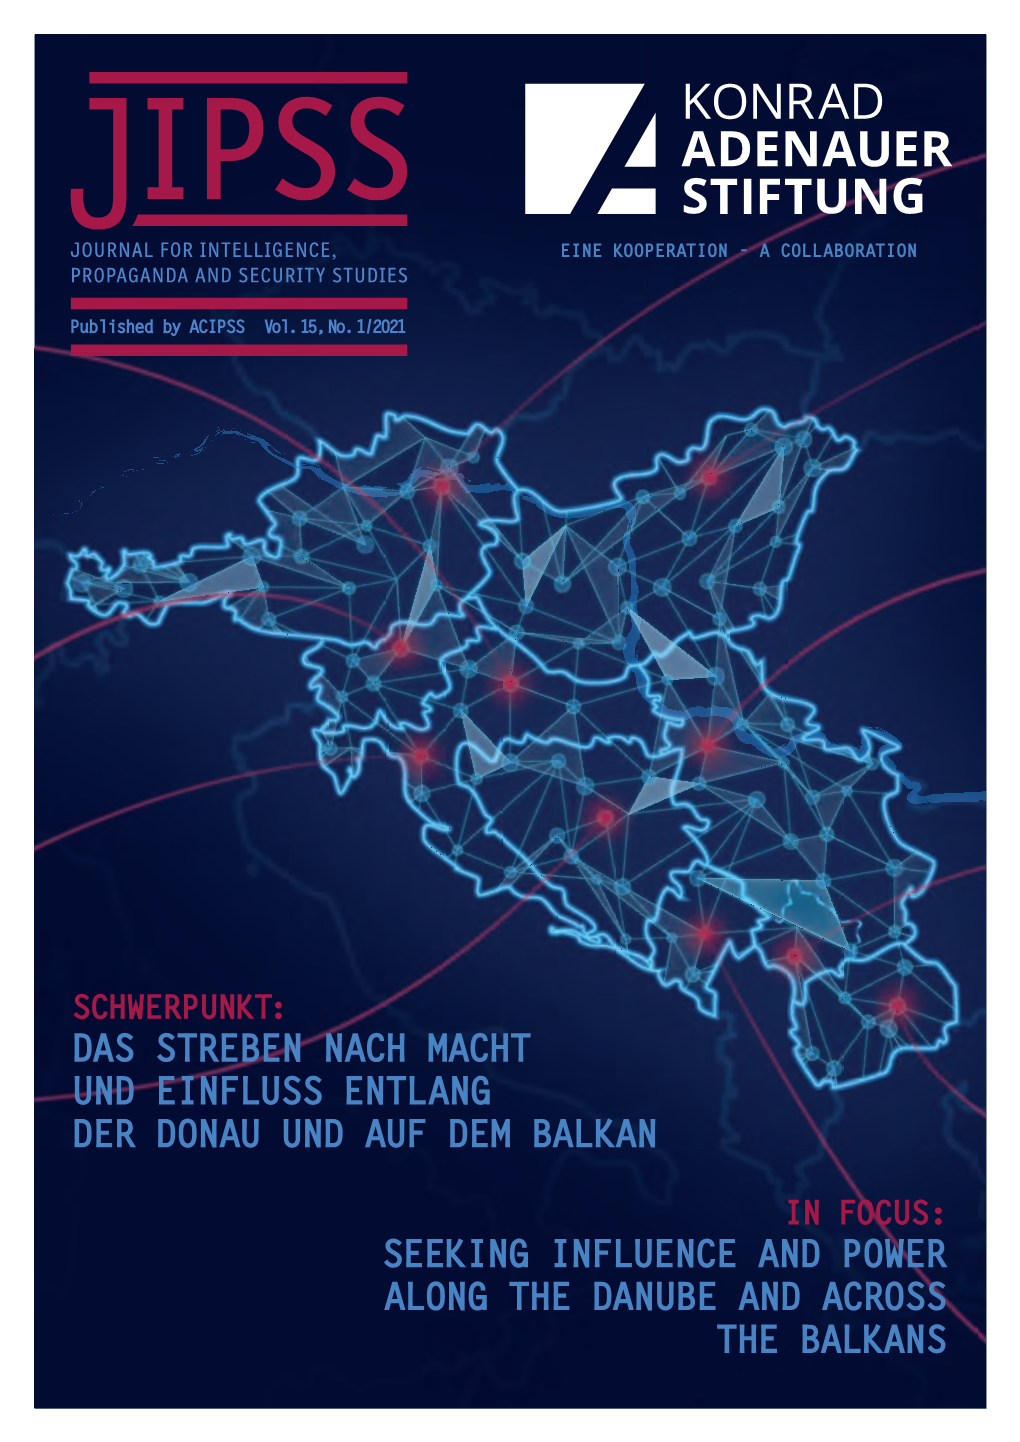 Das Streben Nach Macht Und Einfluss Entlang Der Donau Und Auf Dem Balkan